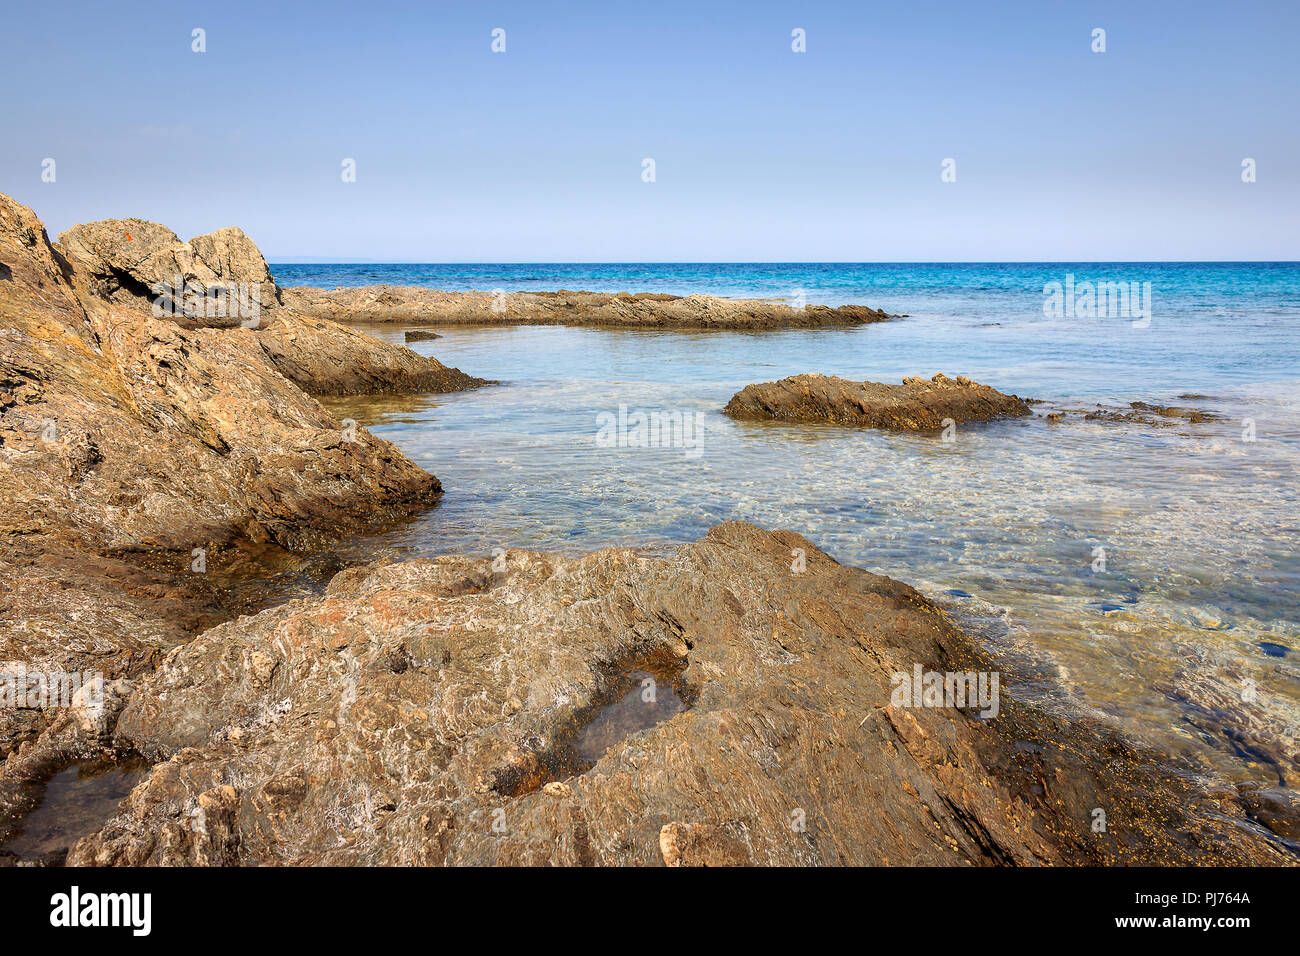 Calma traslucido mare turchese, bellissima scogliera rocciosa sottomarina e creature del mare Foto Stock